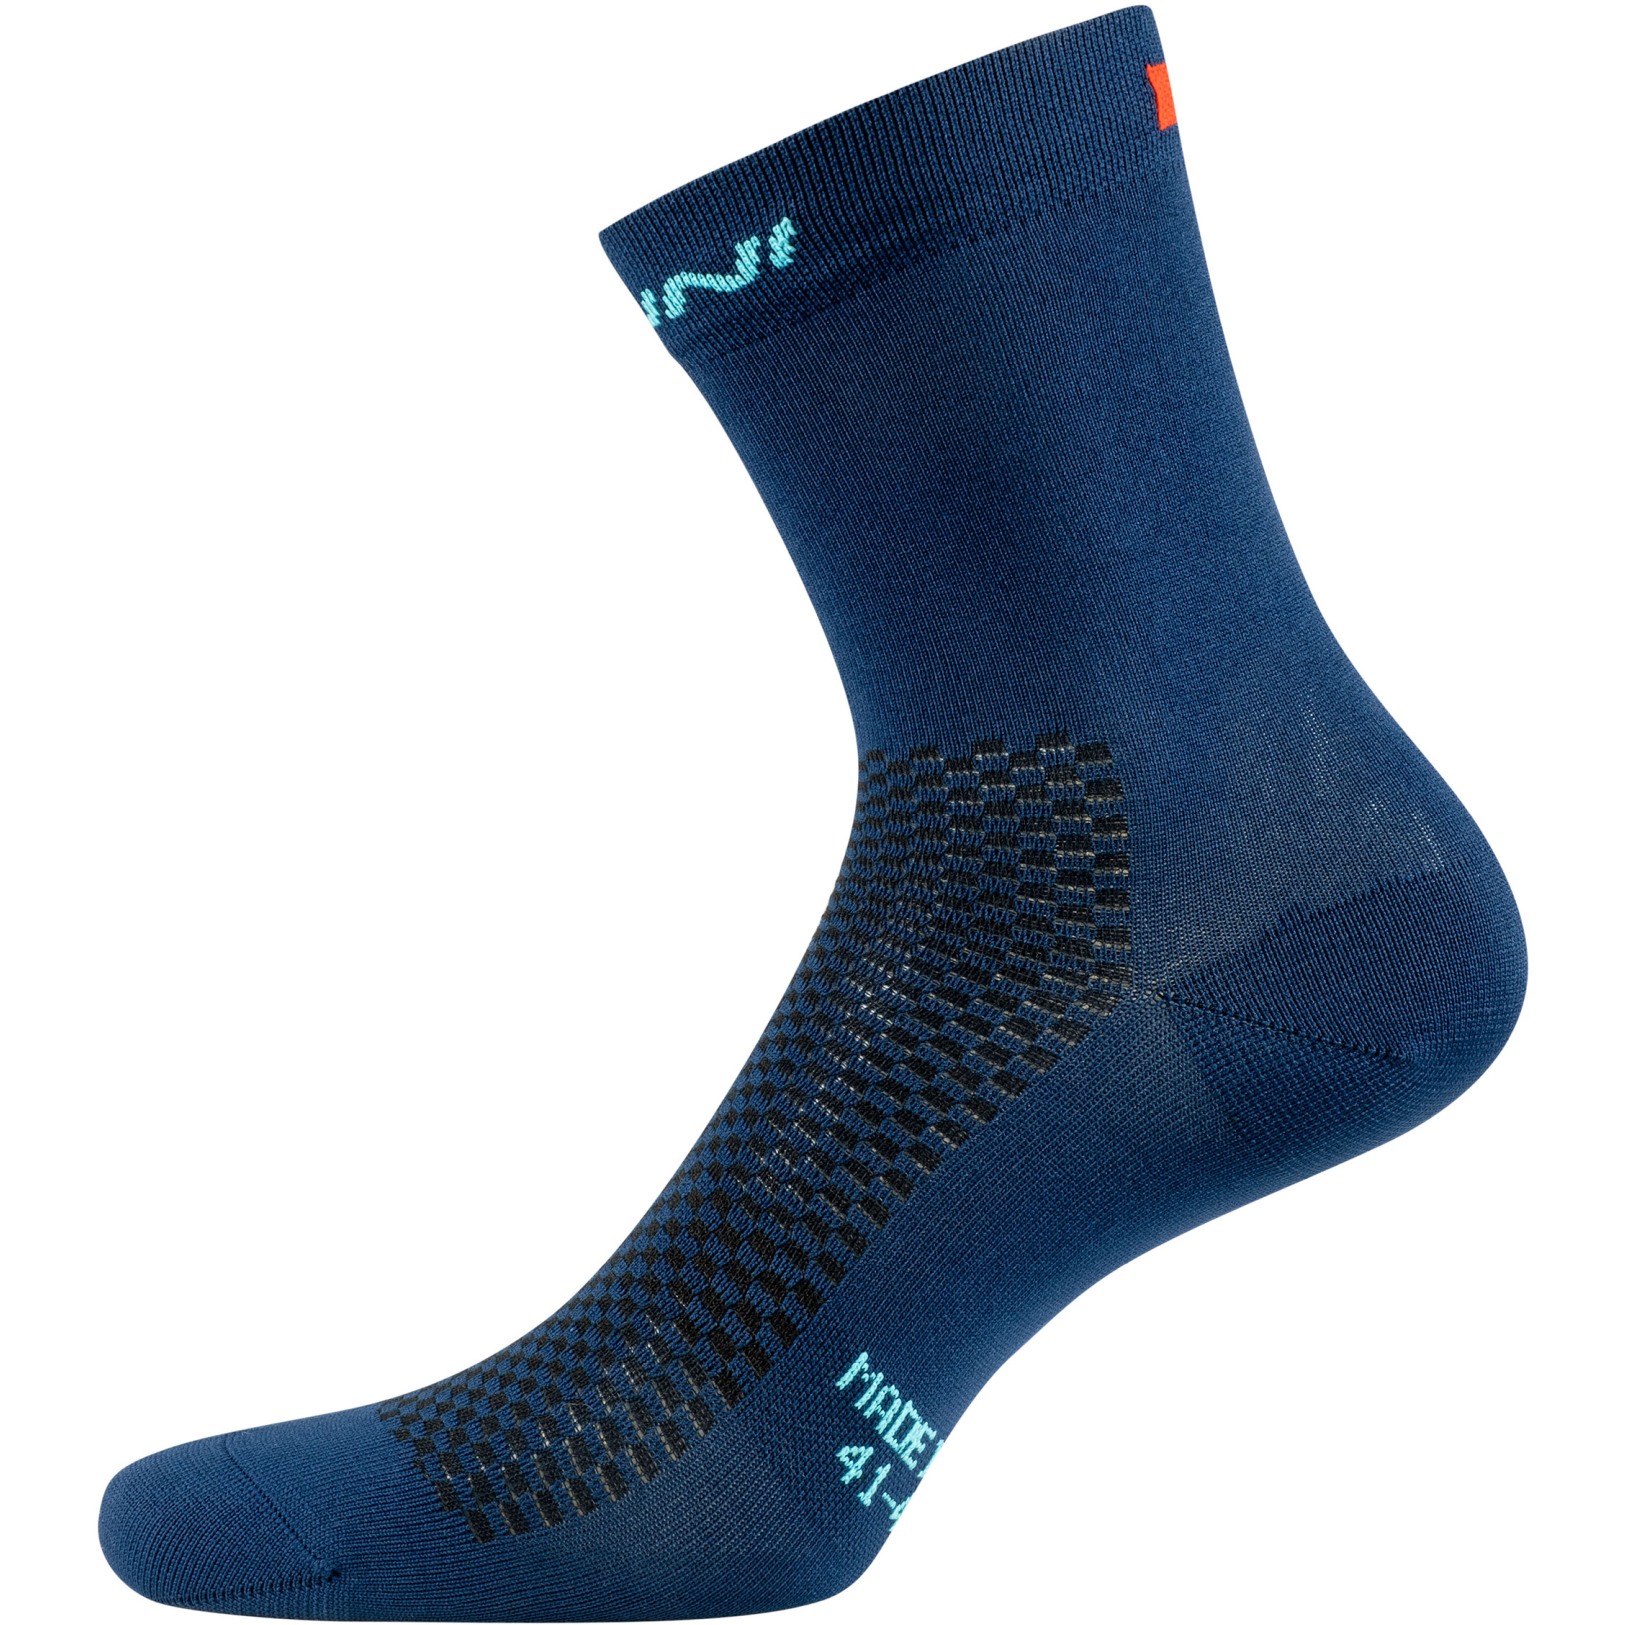 Produktbild von Nalini B0W Vela Socken - blau 4200